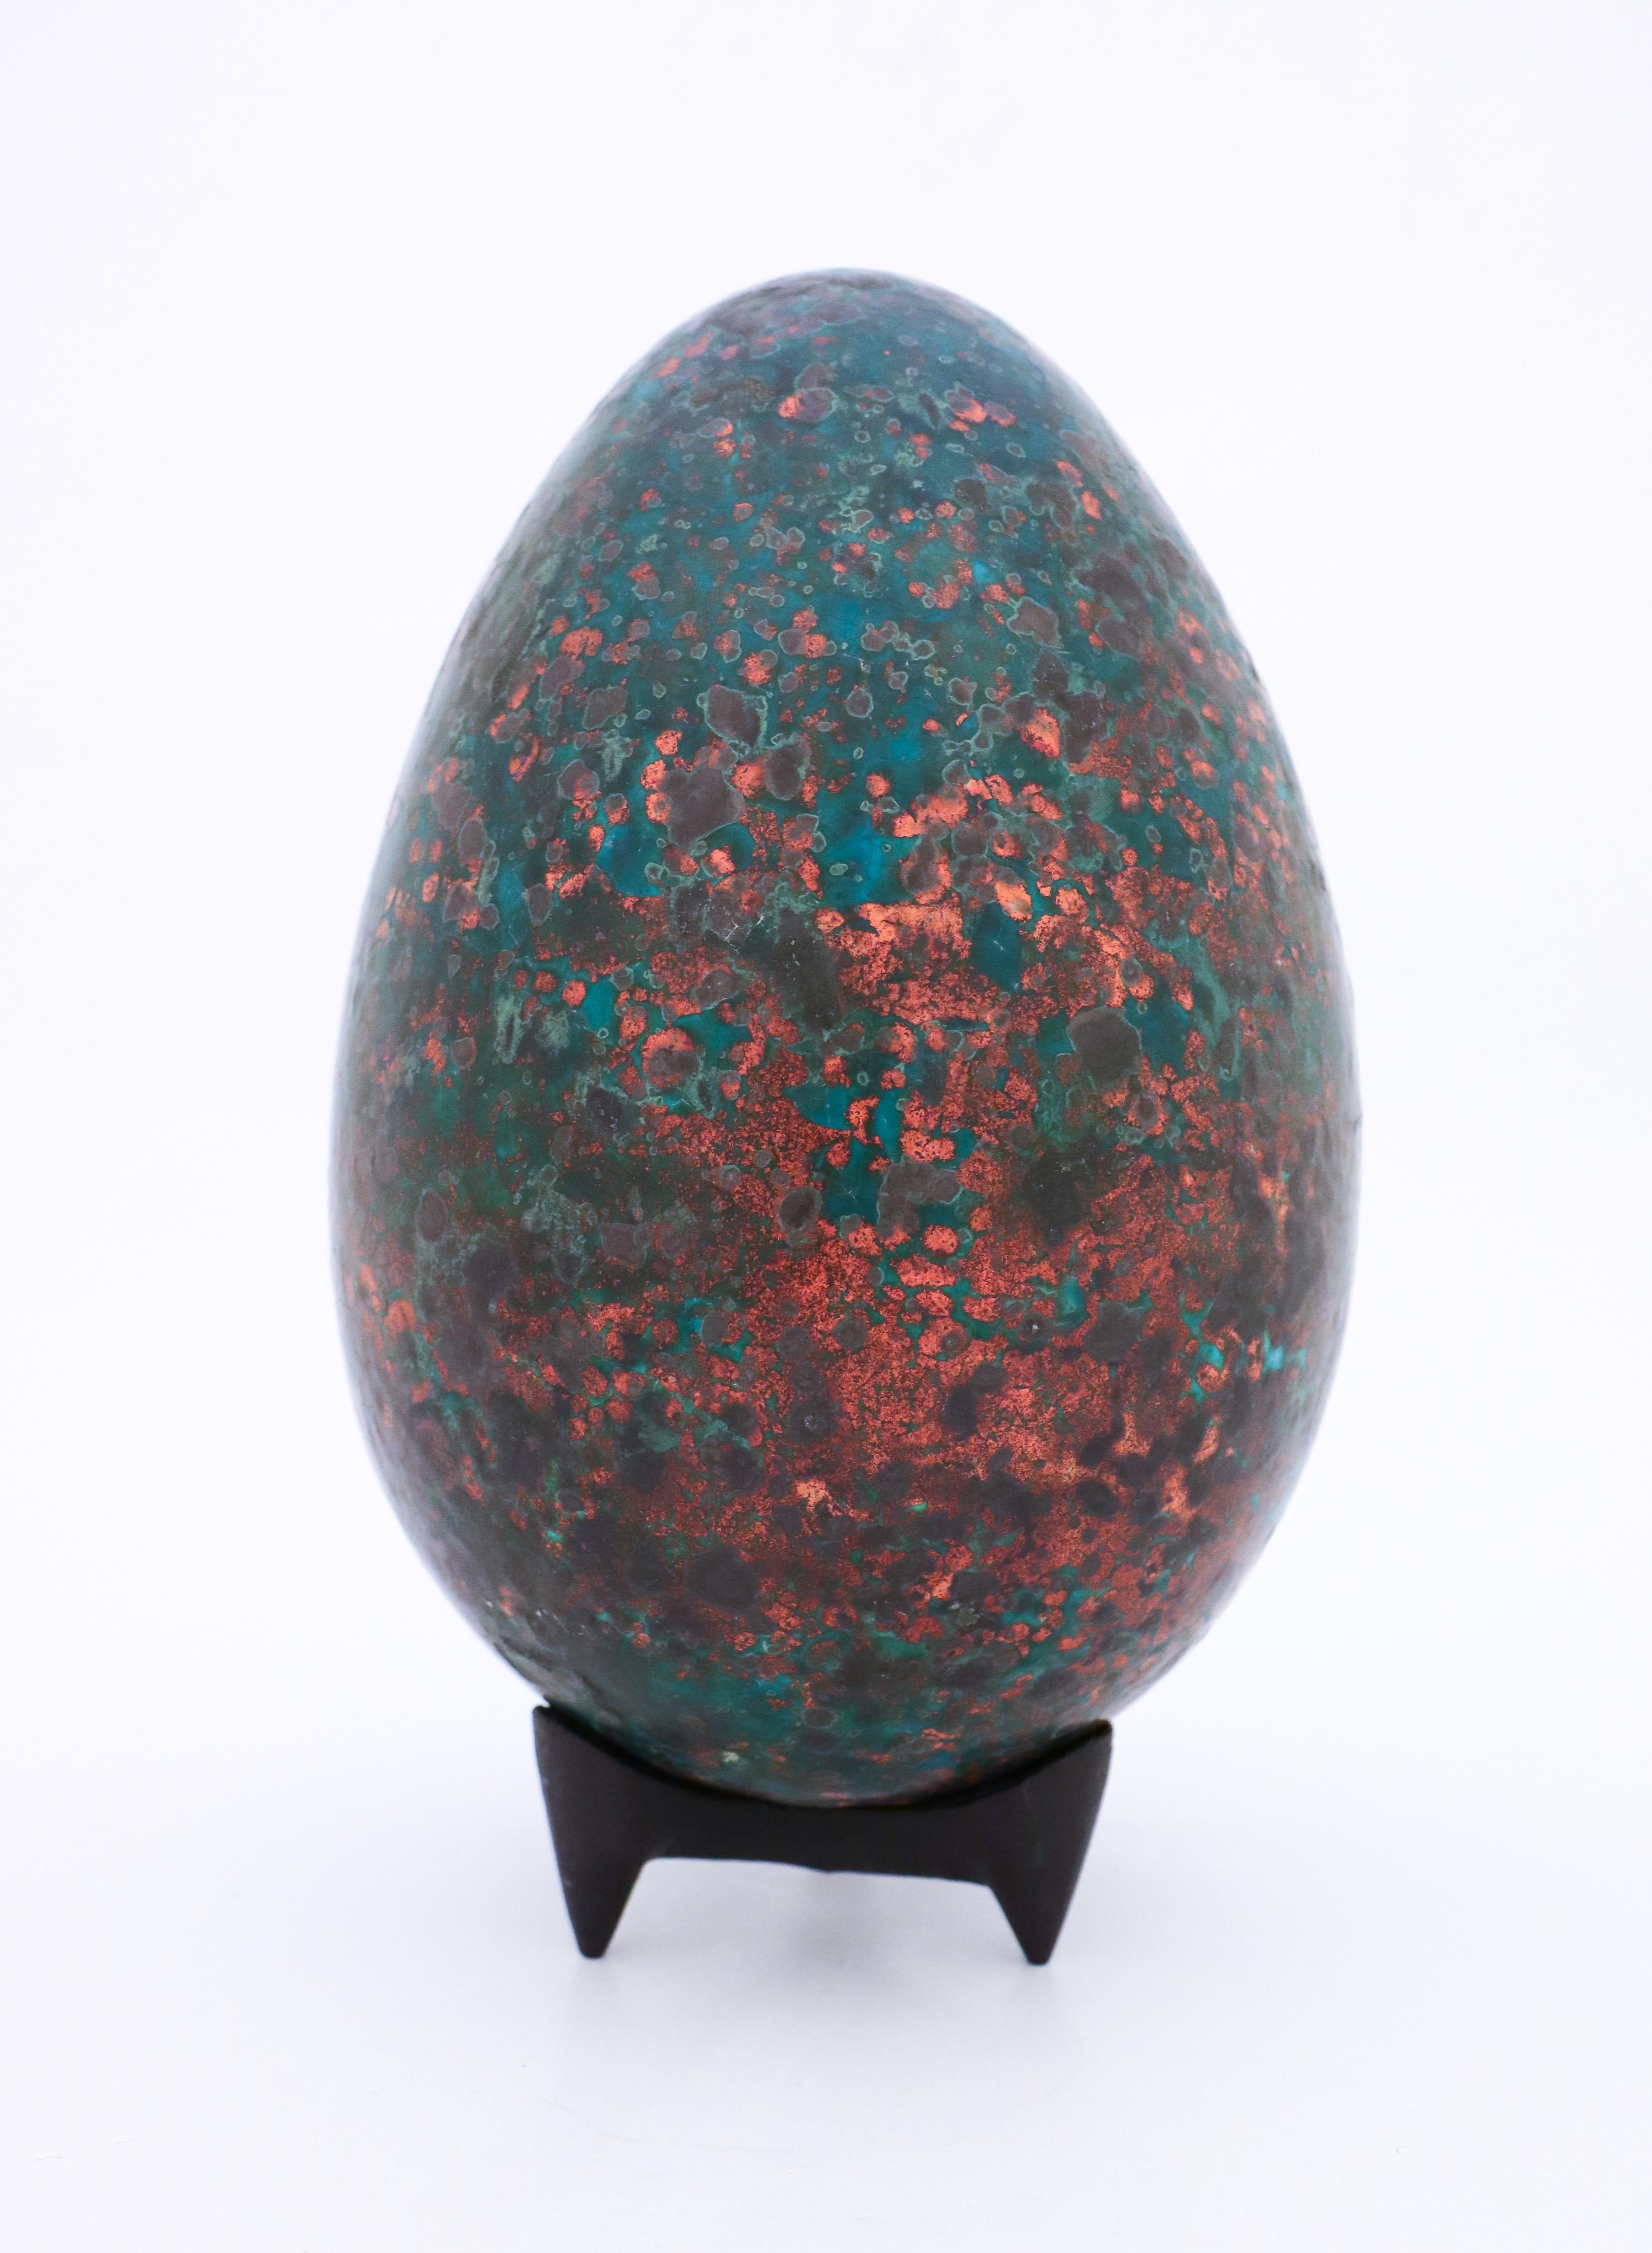 Das Ei wurde von dem schwedischen Keramiker Hans Hedberg entworfen, der in Biot, Frankreich, lebte und arbeitete. Dieses Ei ist 30 cm (11,6